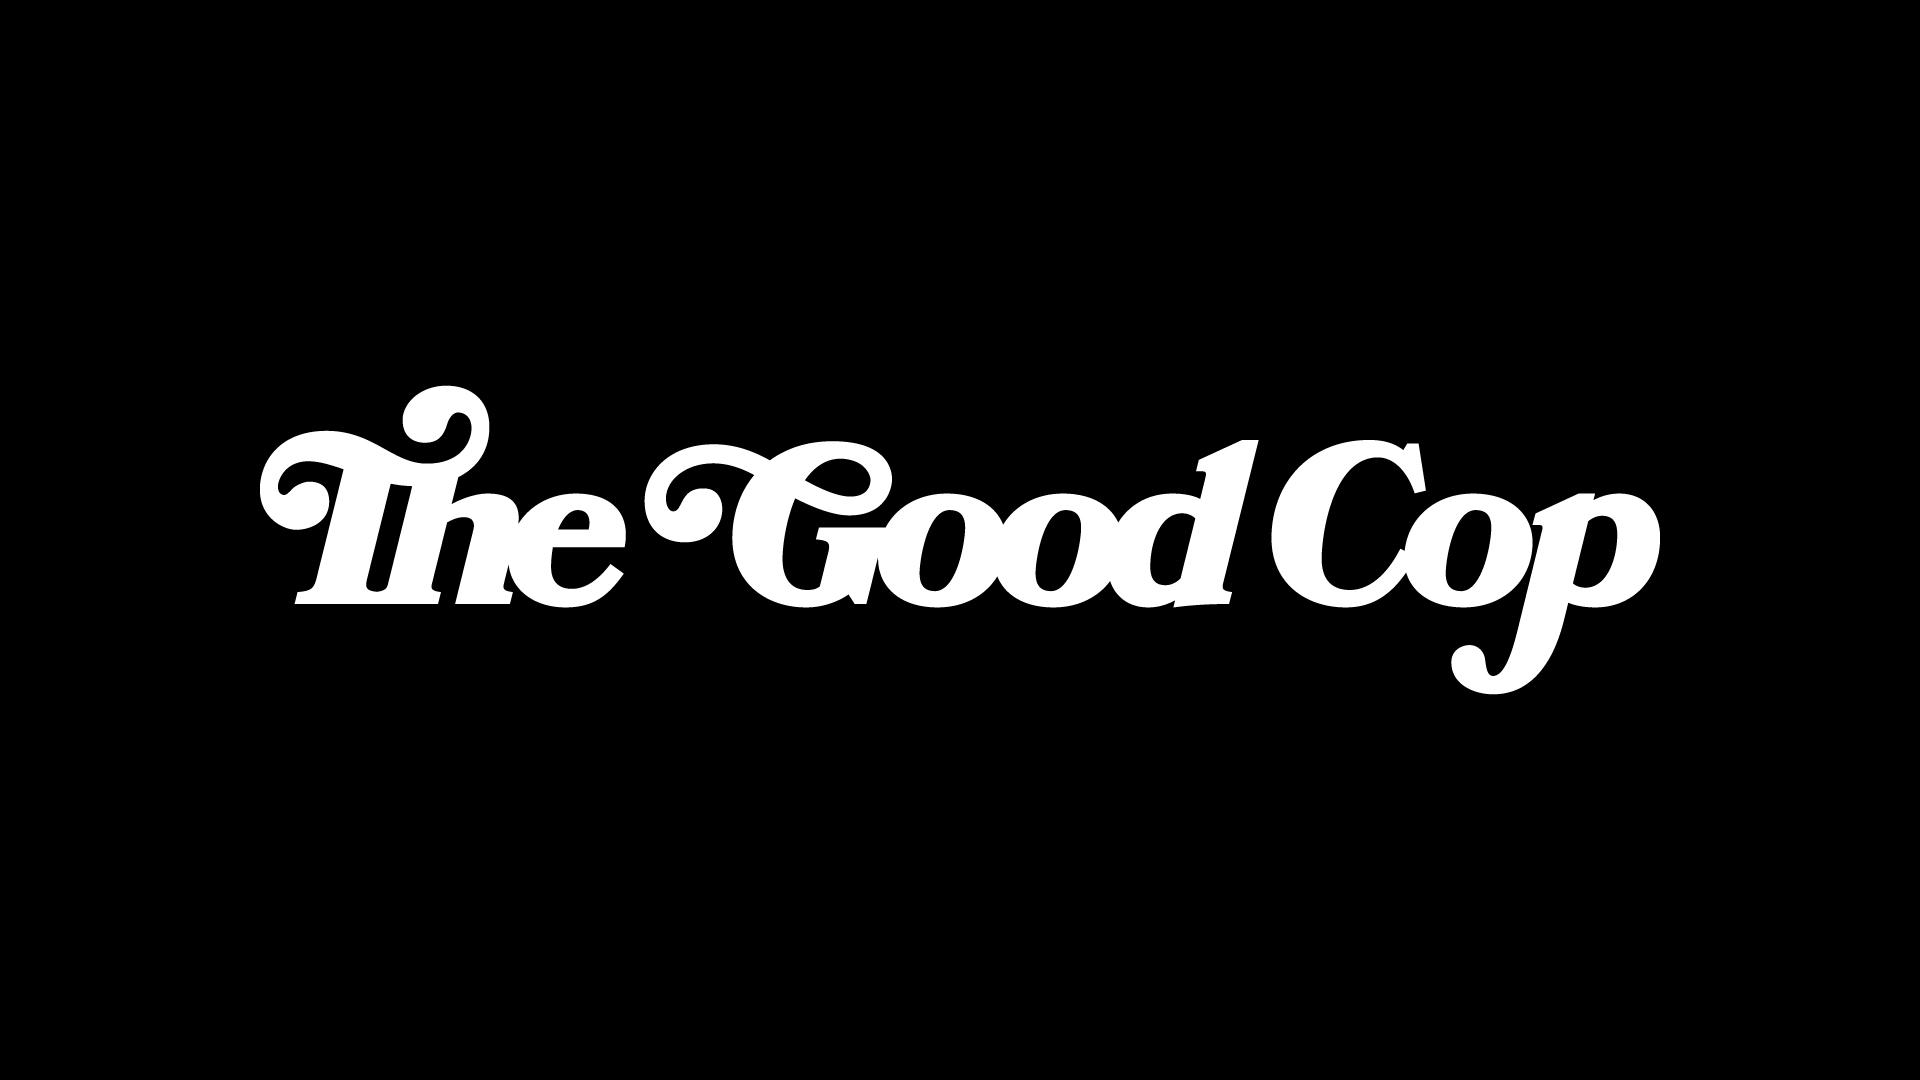 The Good Cop